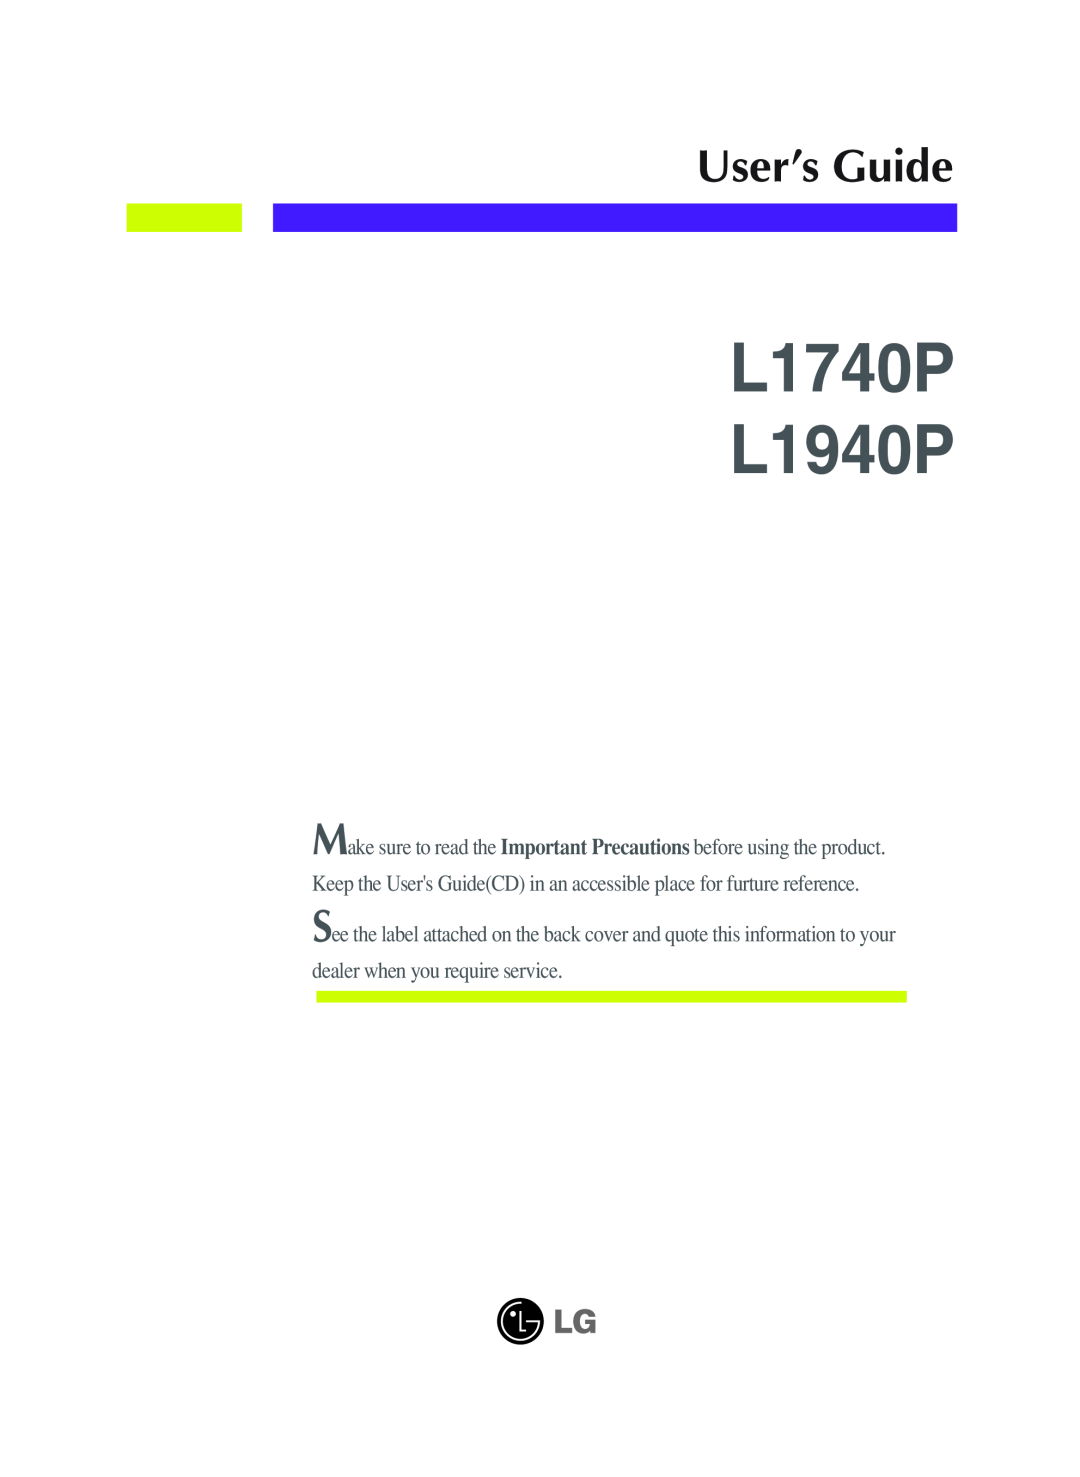 LG Electronics manual L1740P L1940P, User’s Guide 